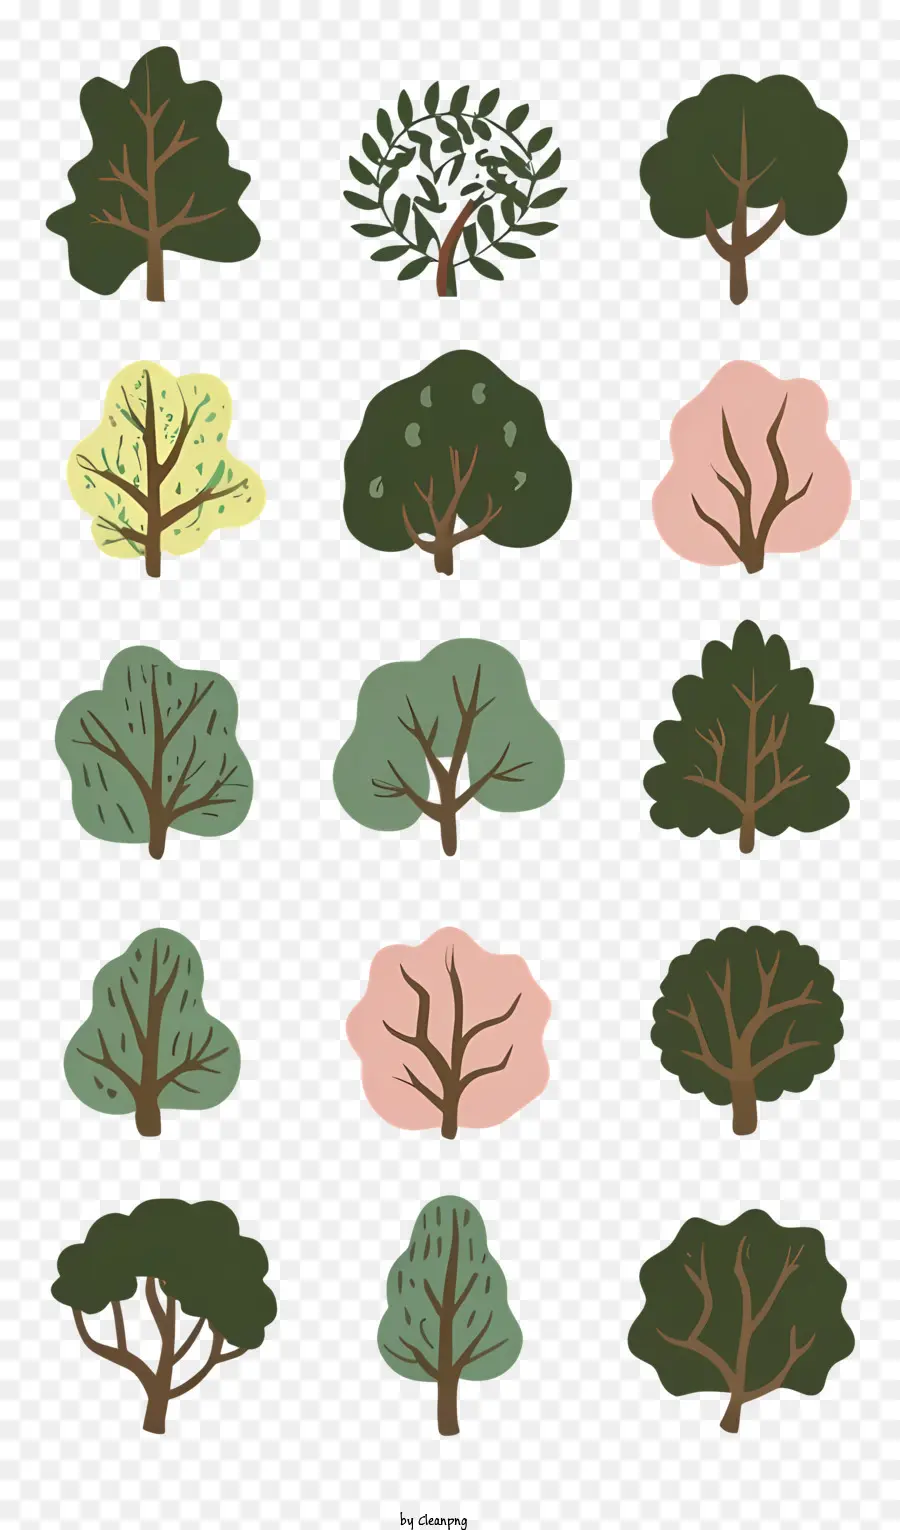 Gli alberi in crescita fioriscono boccioli - Poster che raffigurano varie fasi della crescita degli alberi